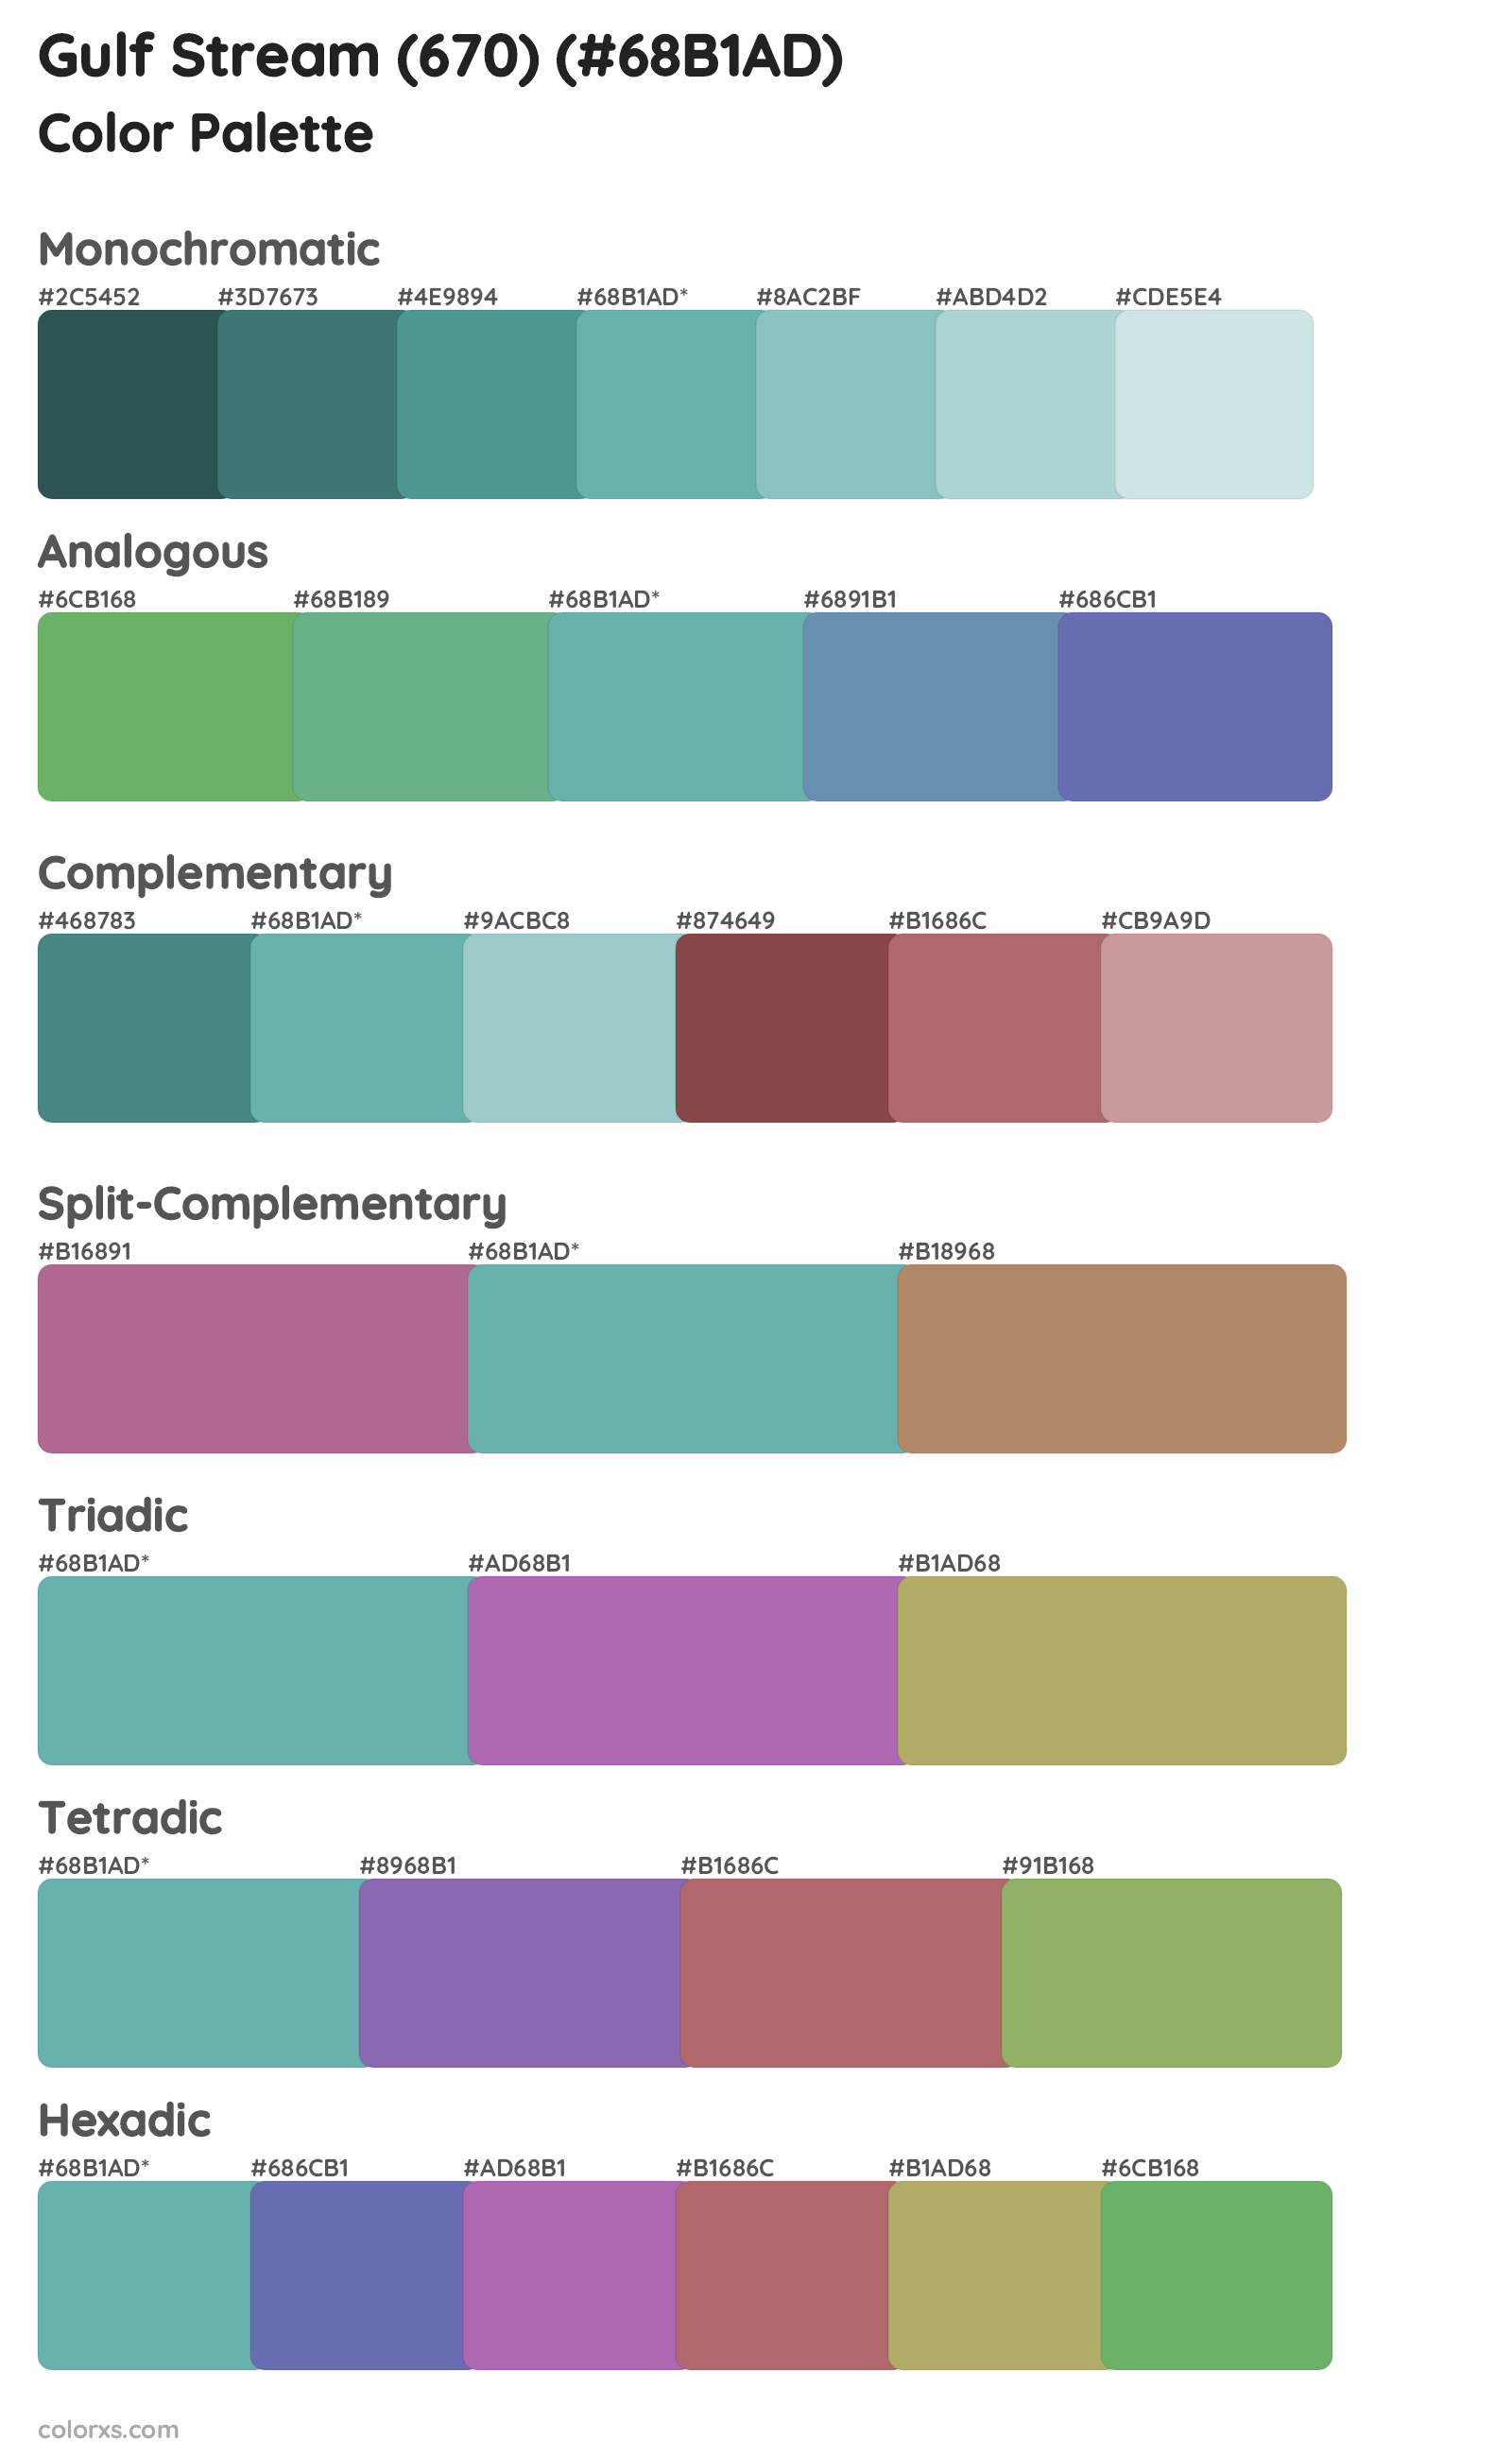 Gulf Stream (670) Color Scheme Palettes